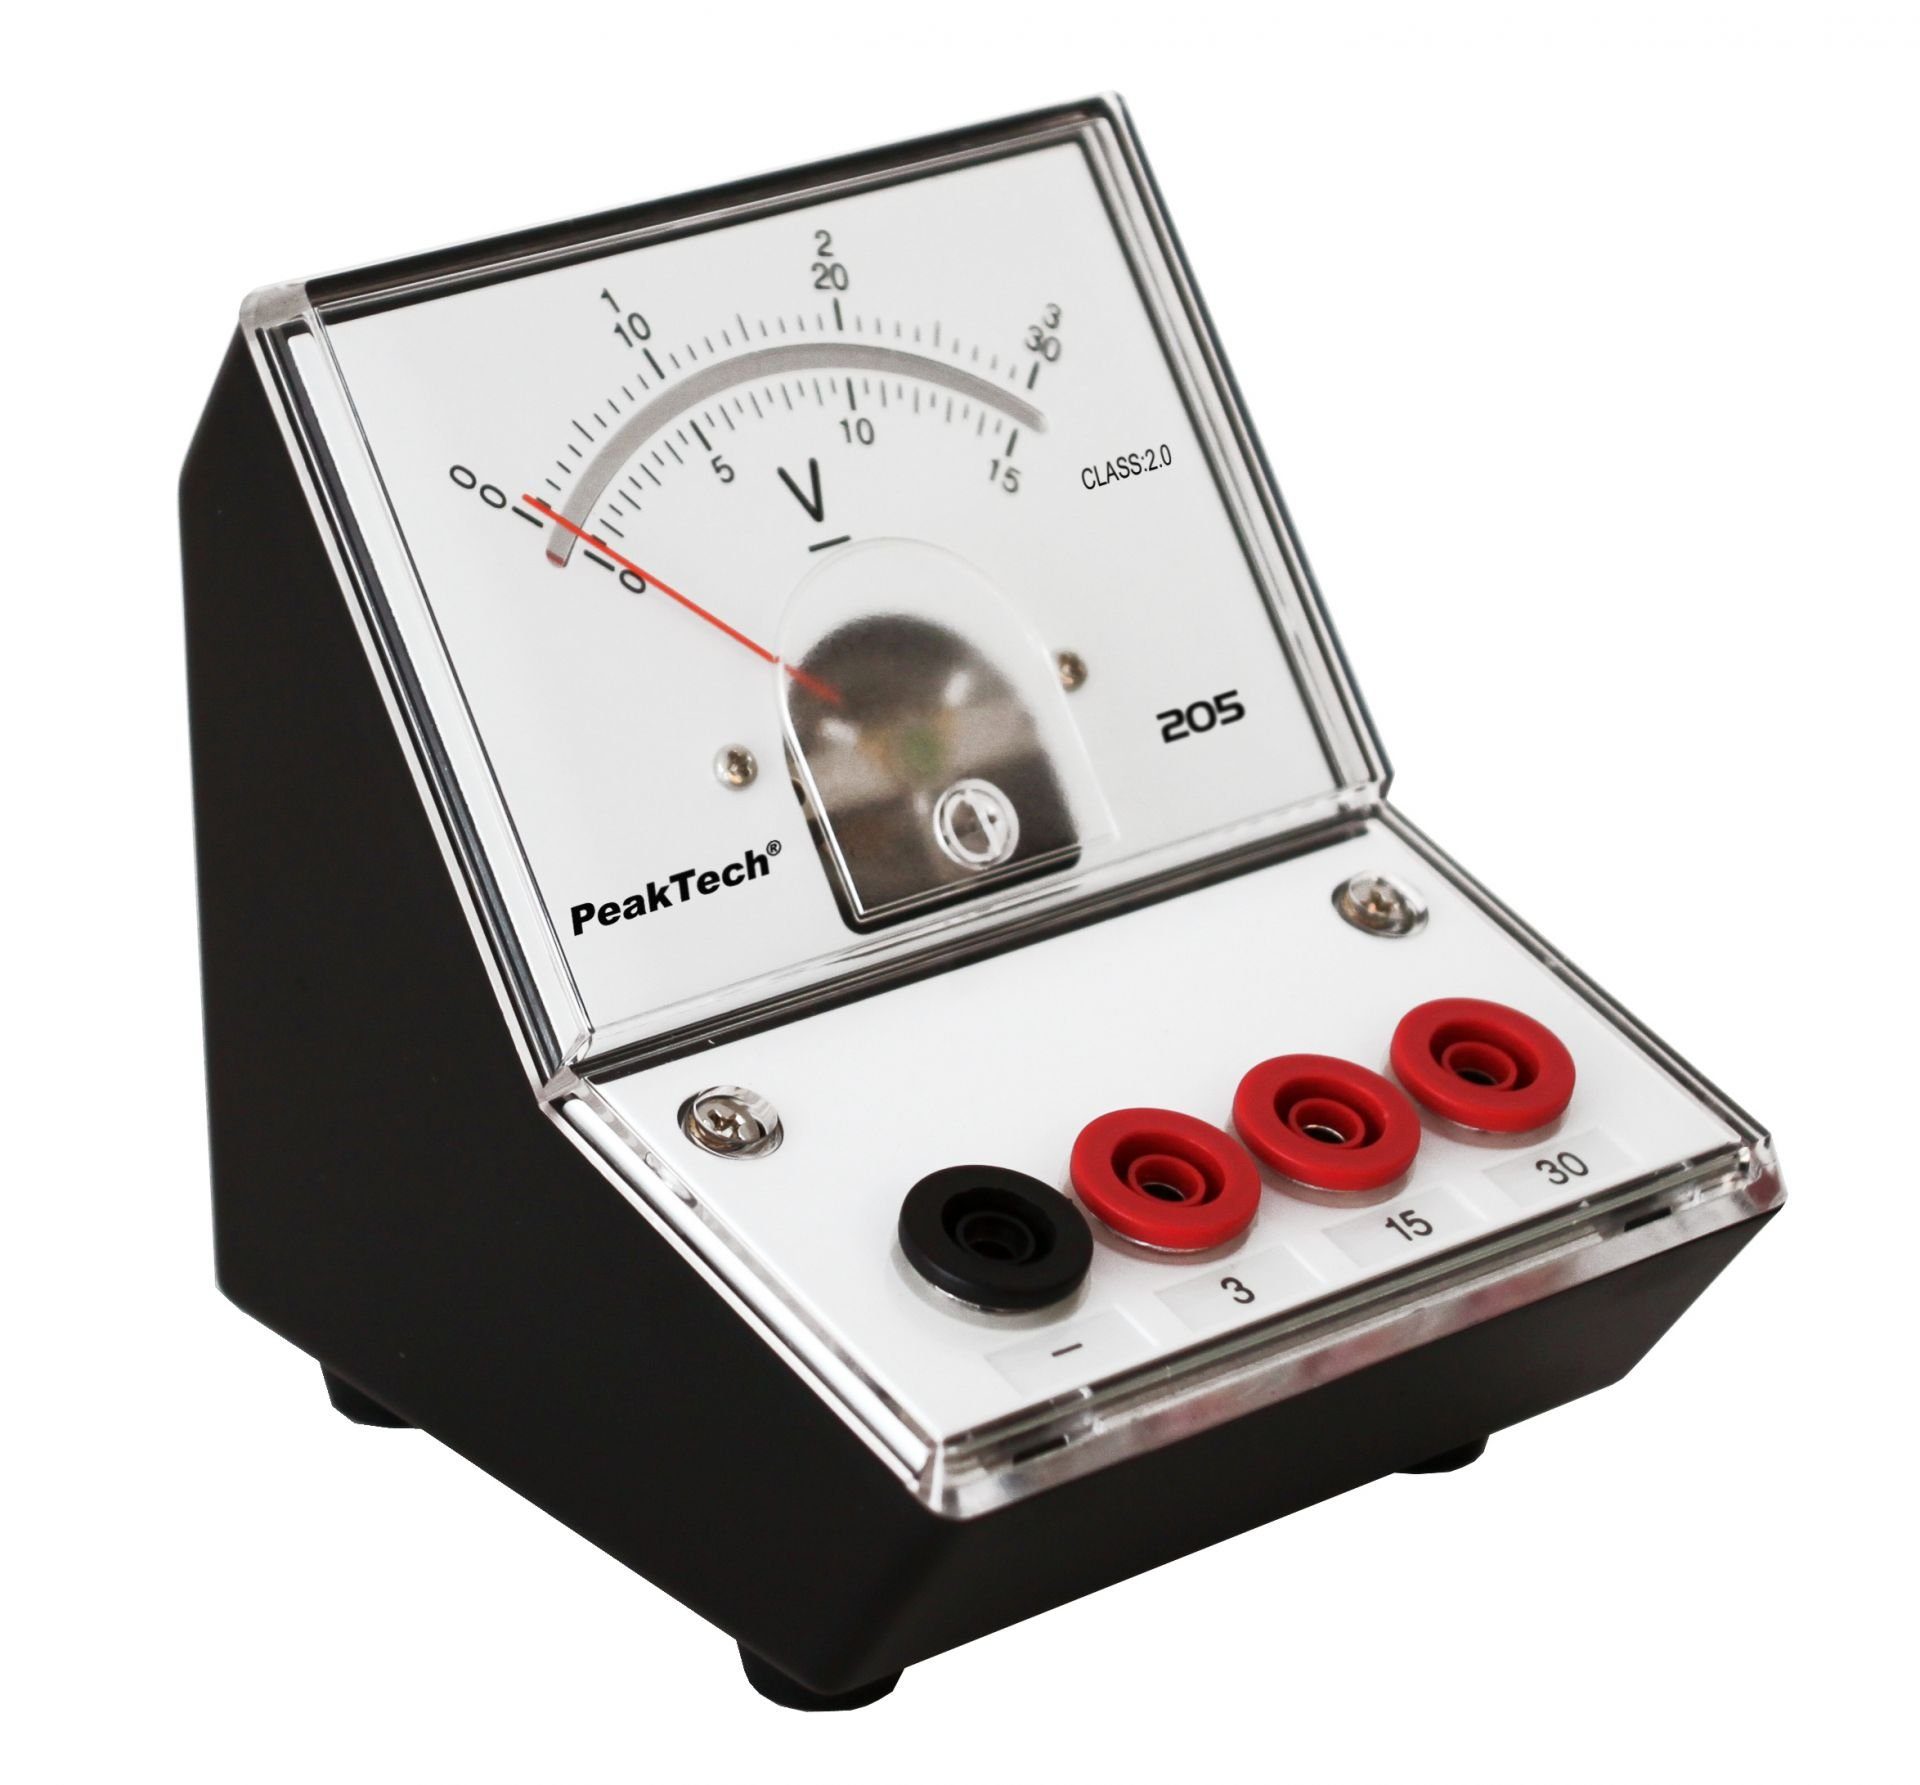 PeakTech Spannungsprüfer PeakTech P 205-06: Analog-Voltmeter 0 - 3V/15V/30V DC (ED-205 3/30V), (1 St)